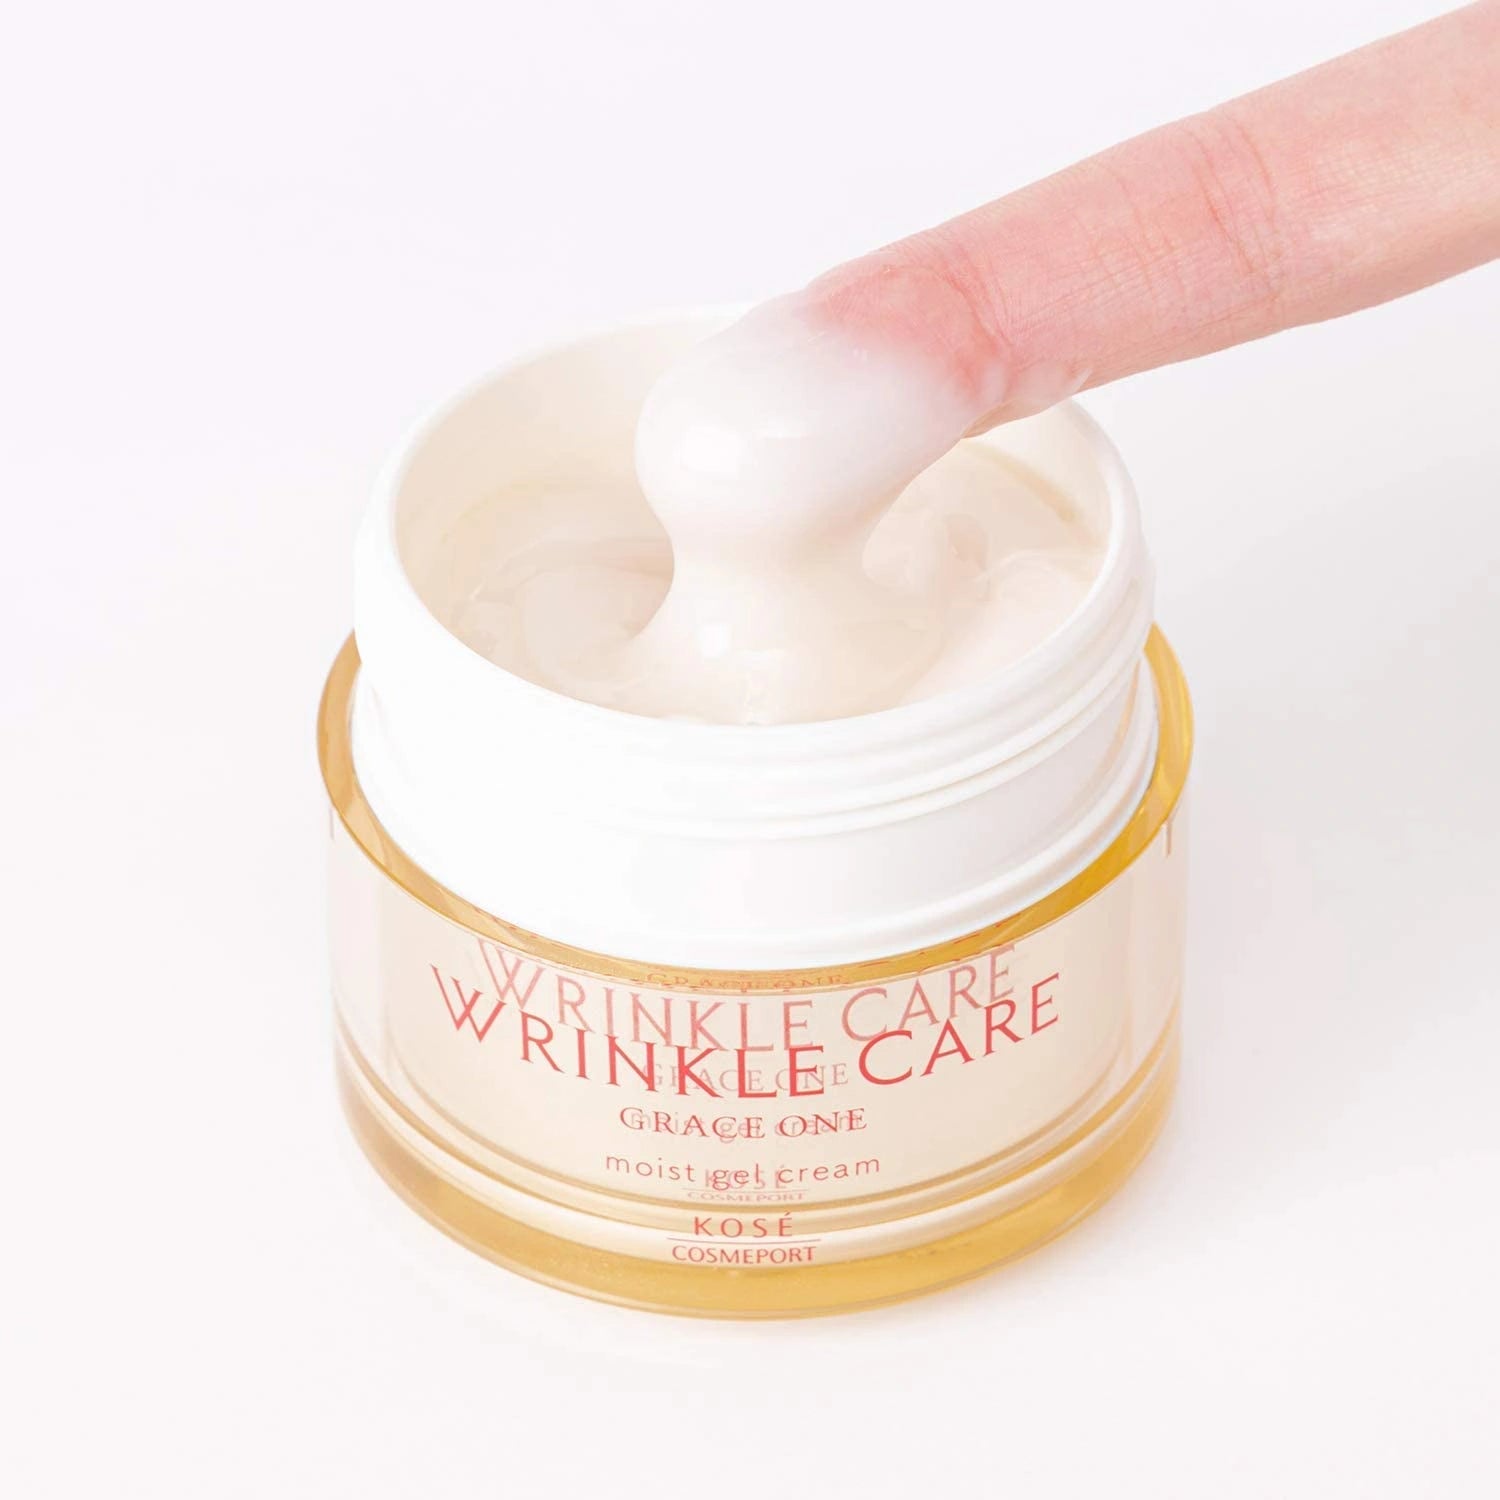 Kose Grace Wrinkle Care Moist Gel Cream 100g - Buy Me Japan